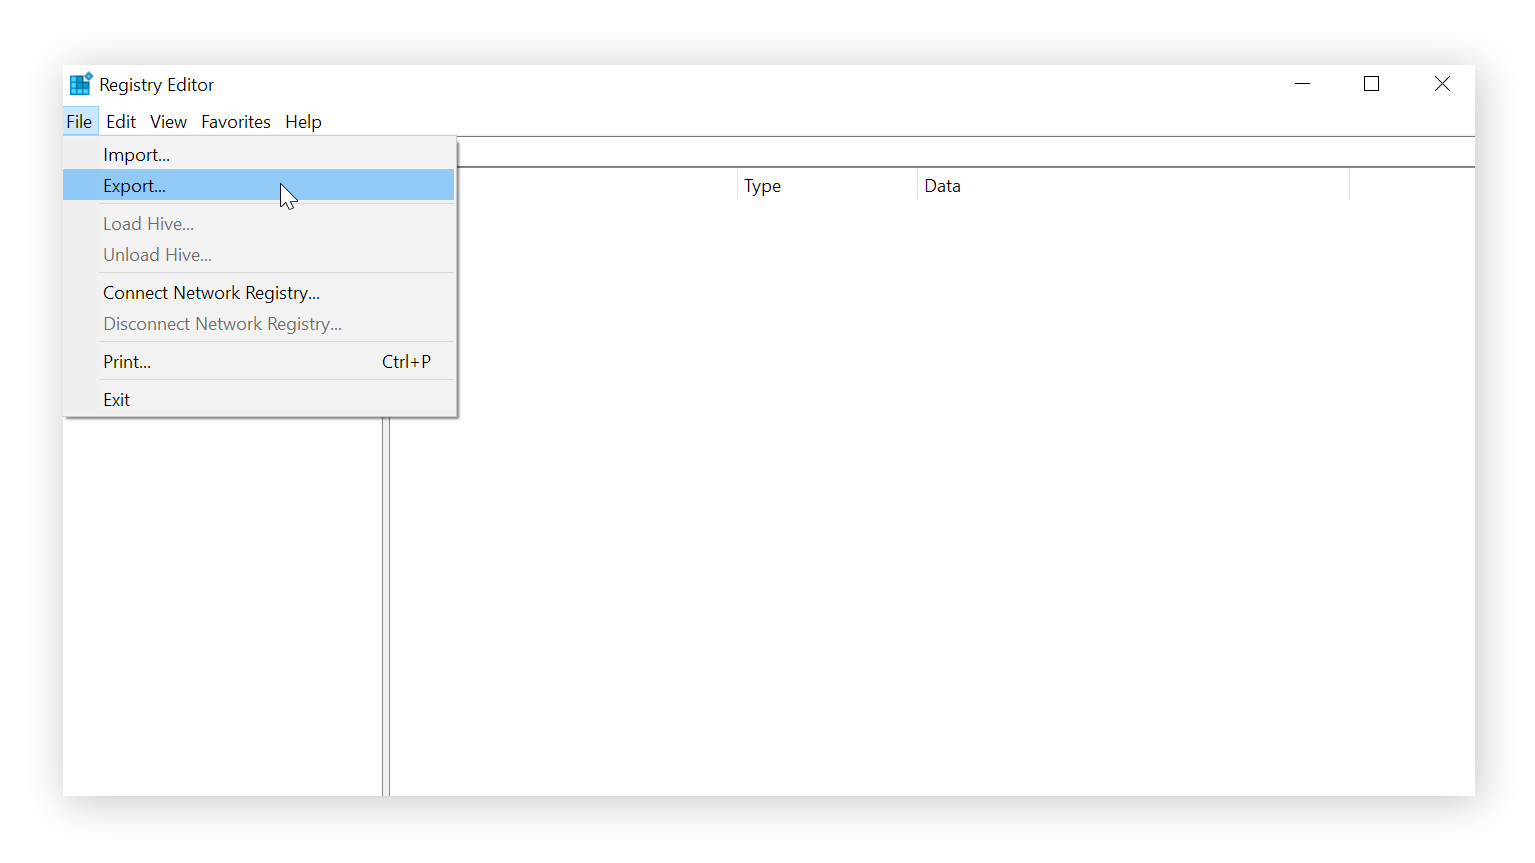 O Editor do Registro está aberto e o usuário clicou em Arquivo. O ponteiro do mouse está sobre o comando “Exportar”.